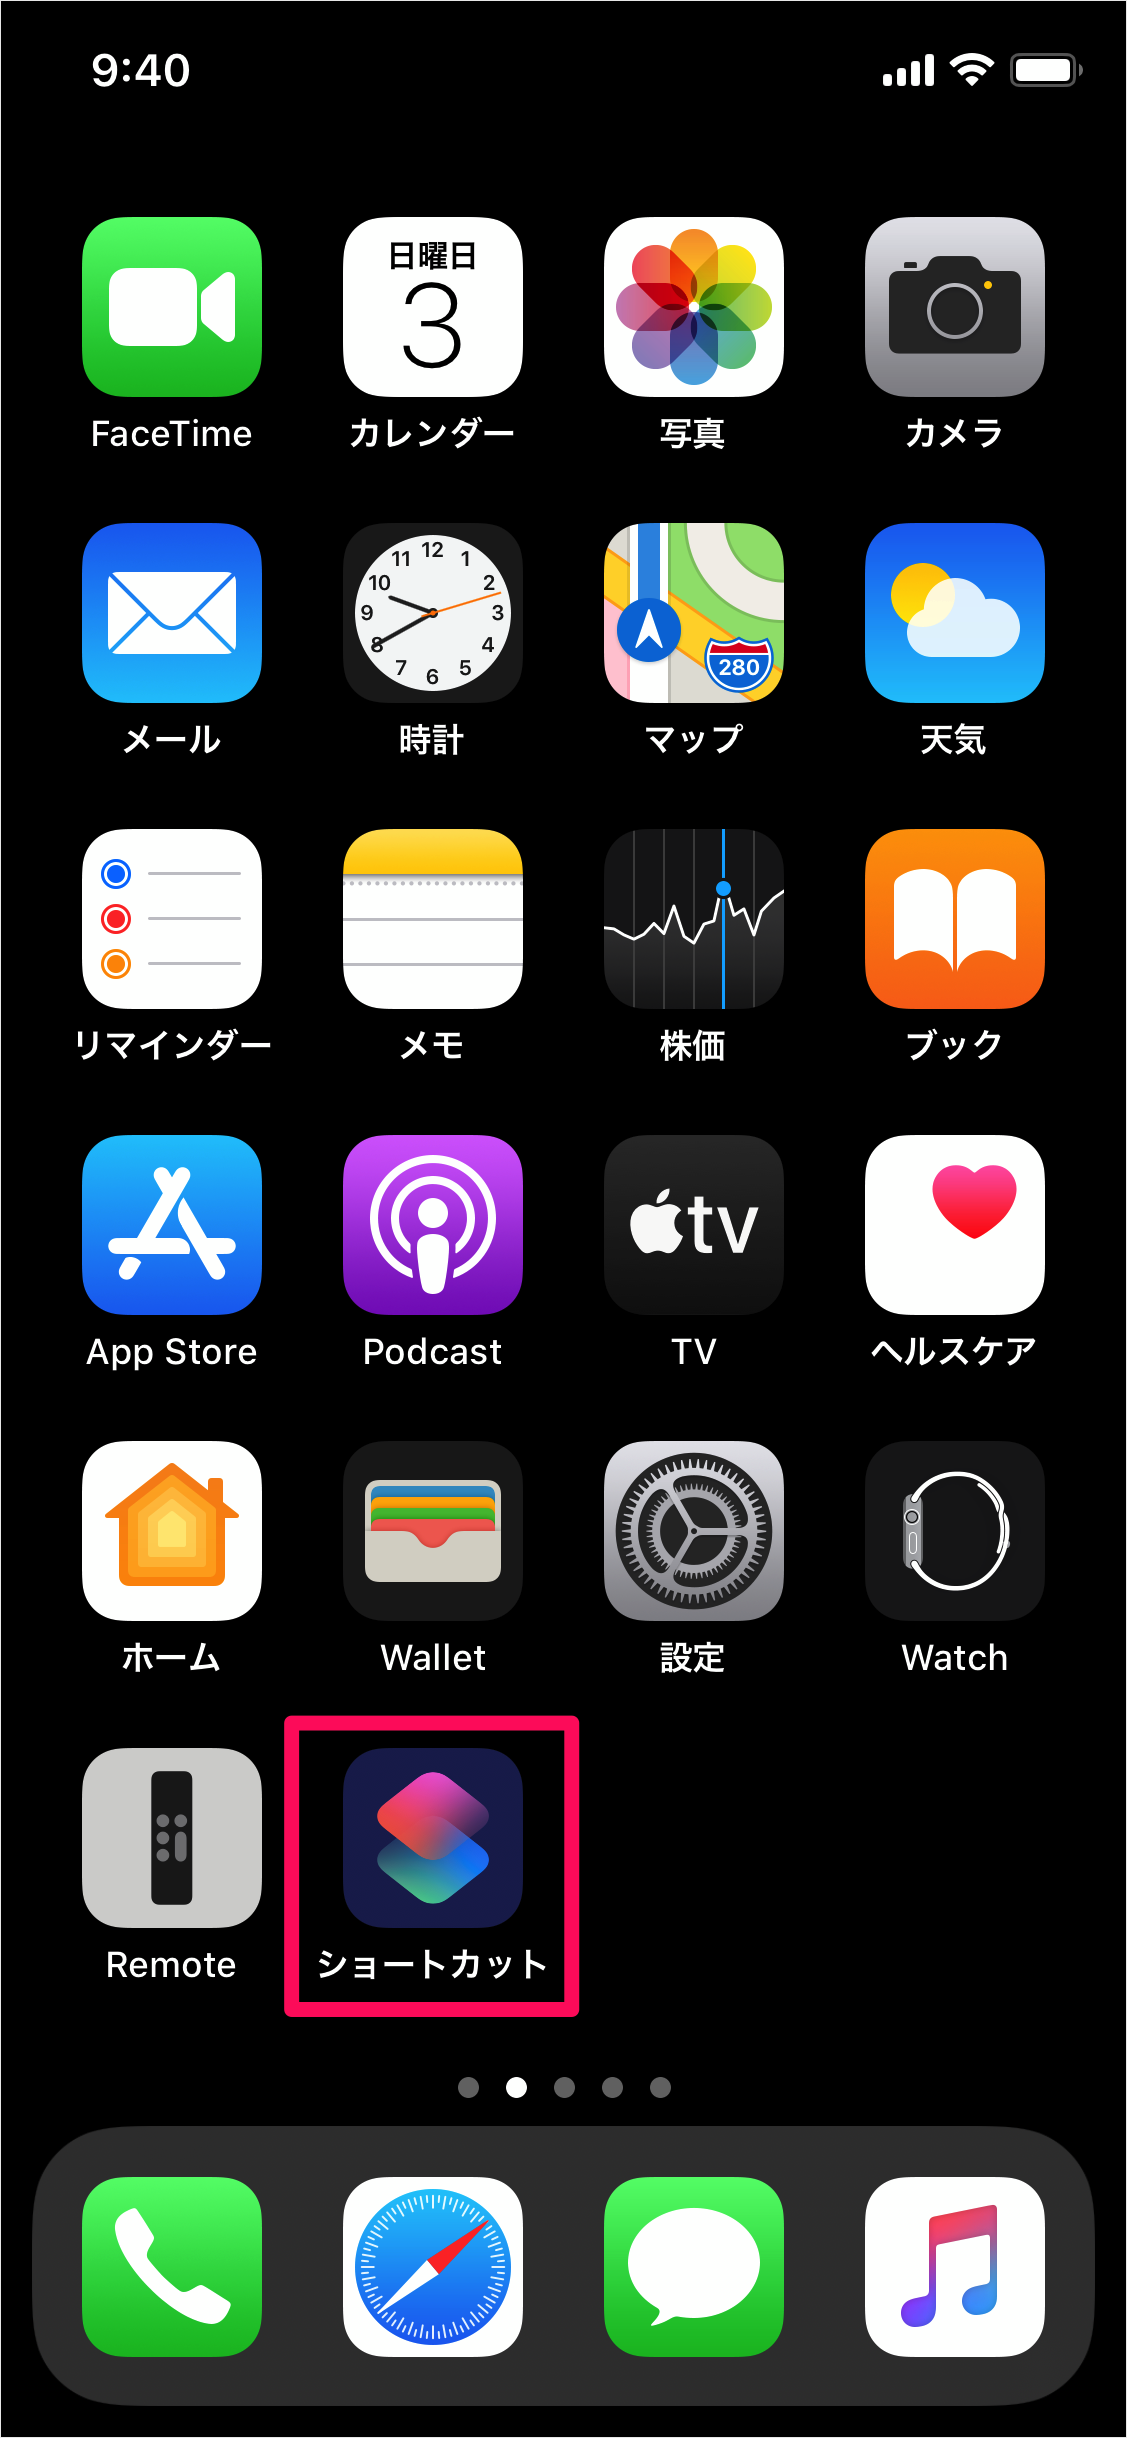 Iphone ワンタップで電話をかける ショートカットの作成 Pc設定のカルマ